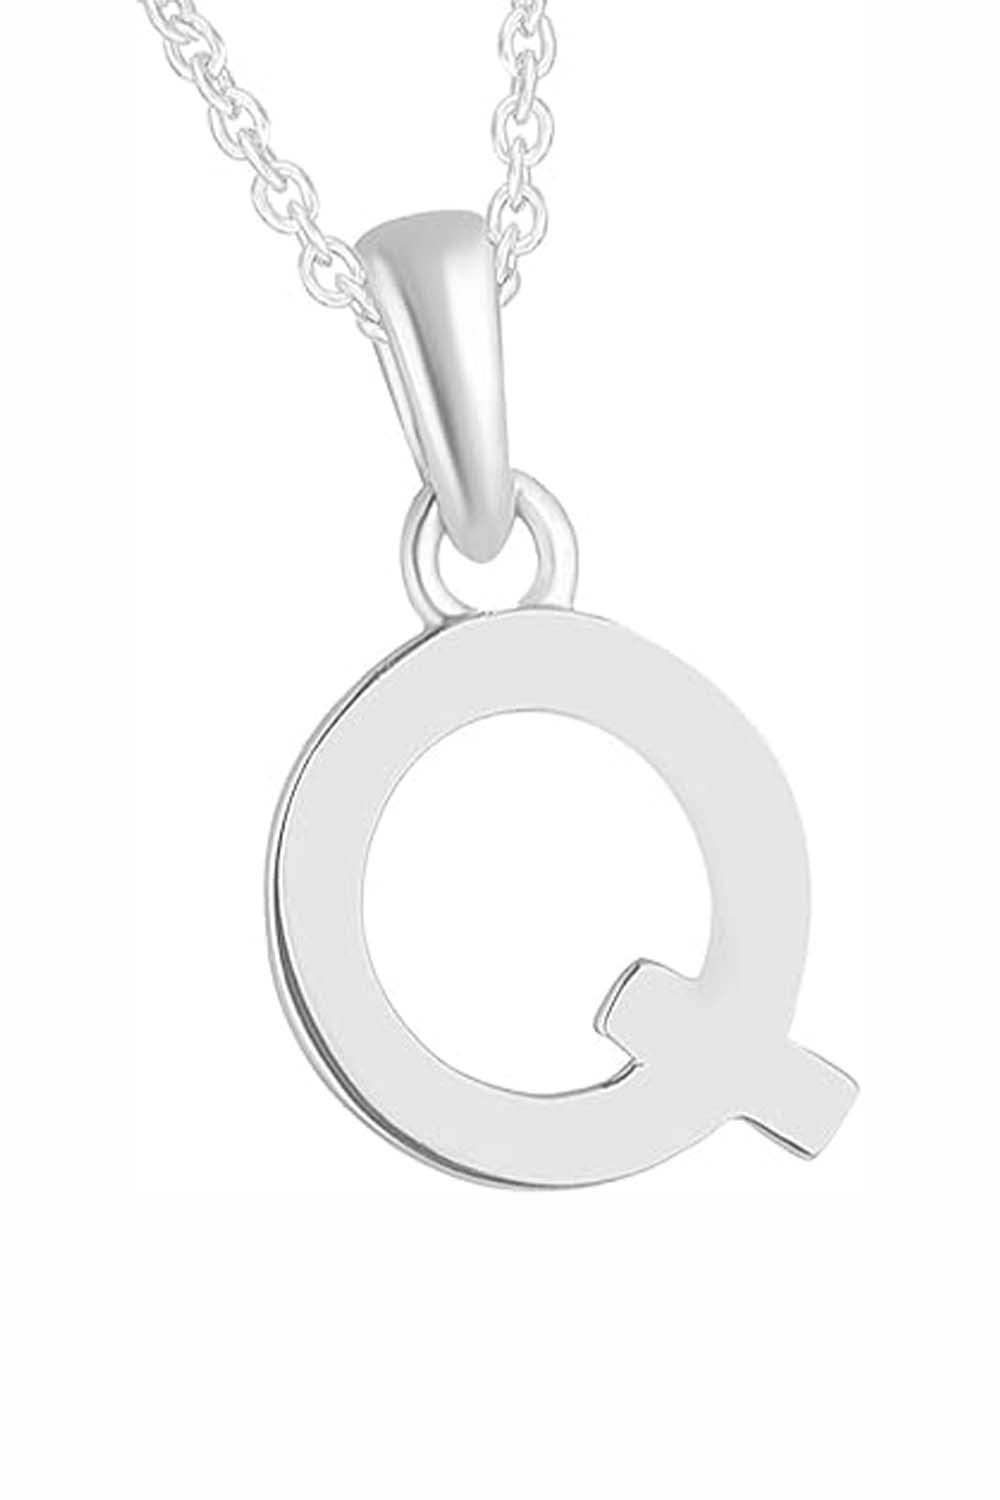 Q Letter Pendant Necklace Girls